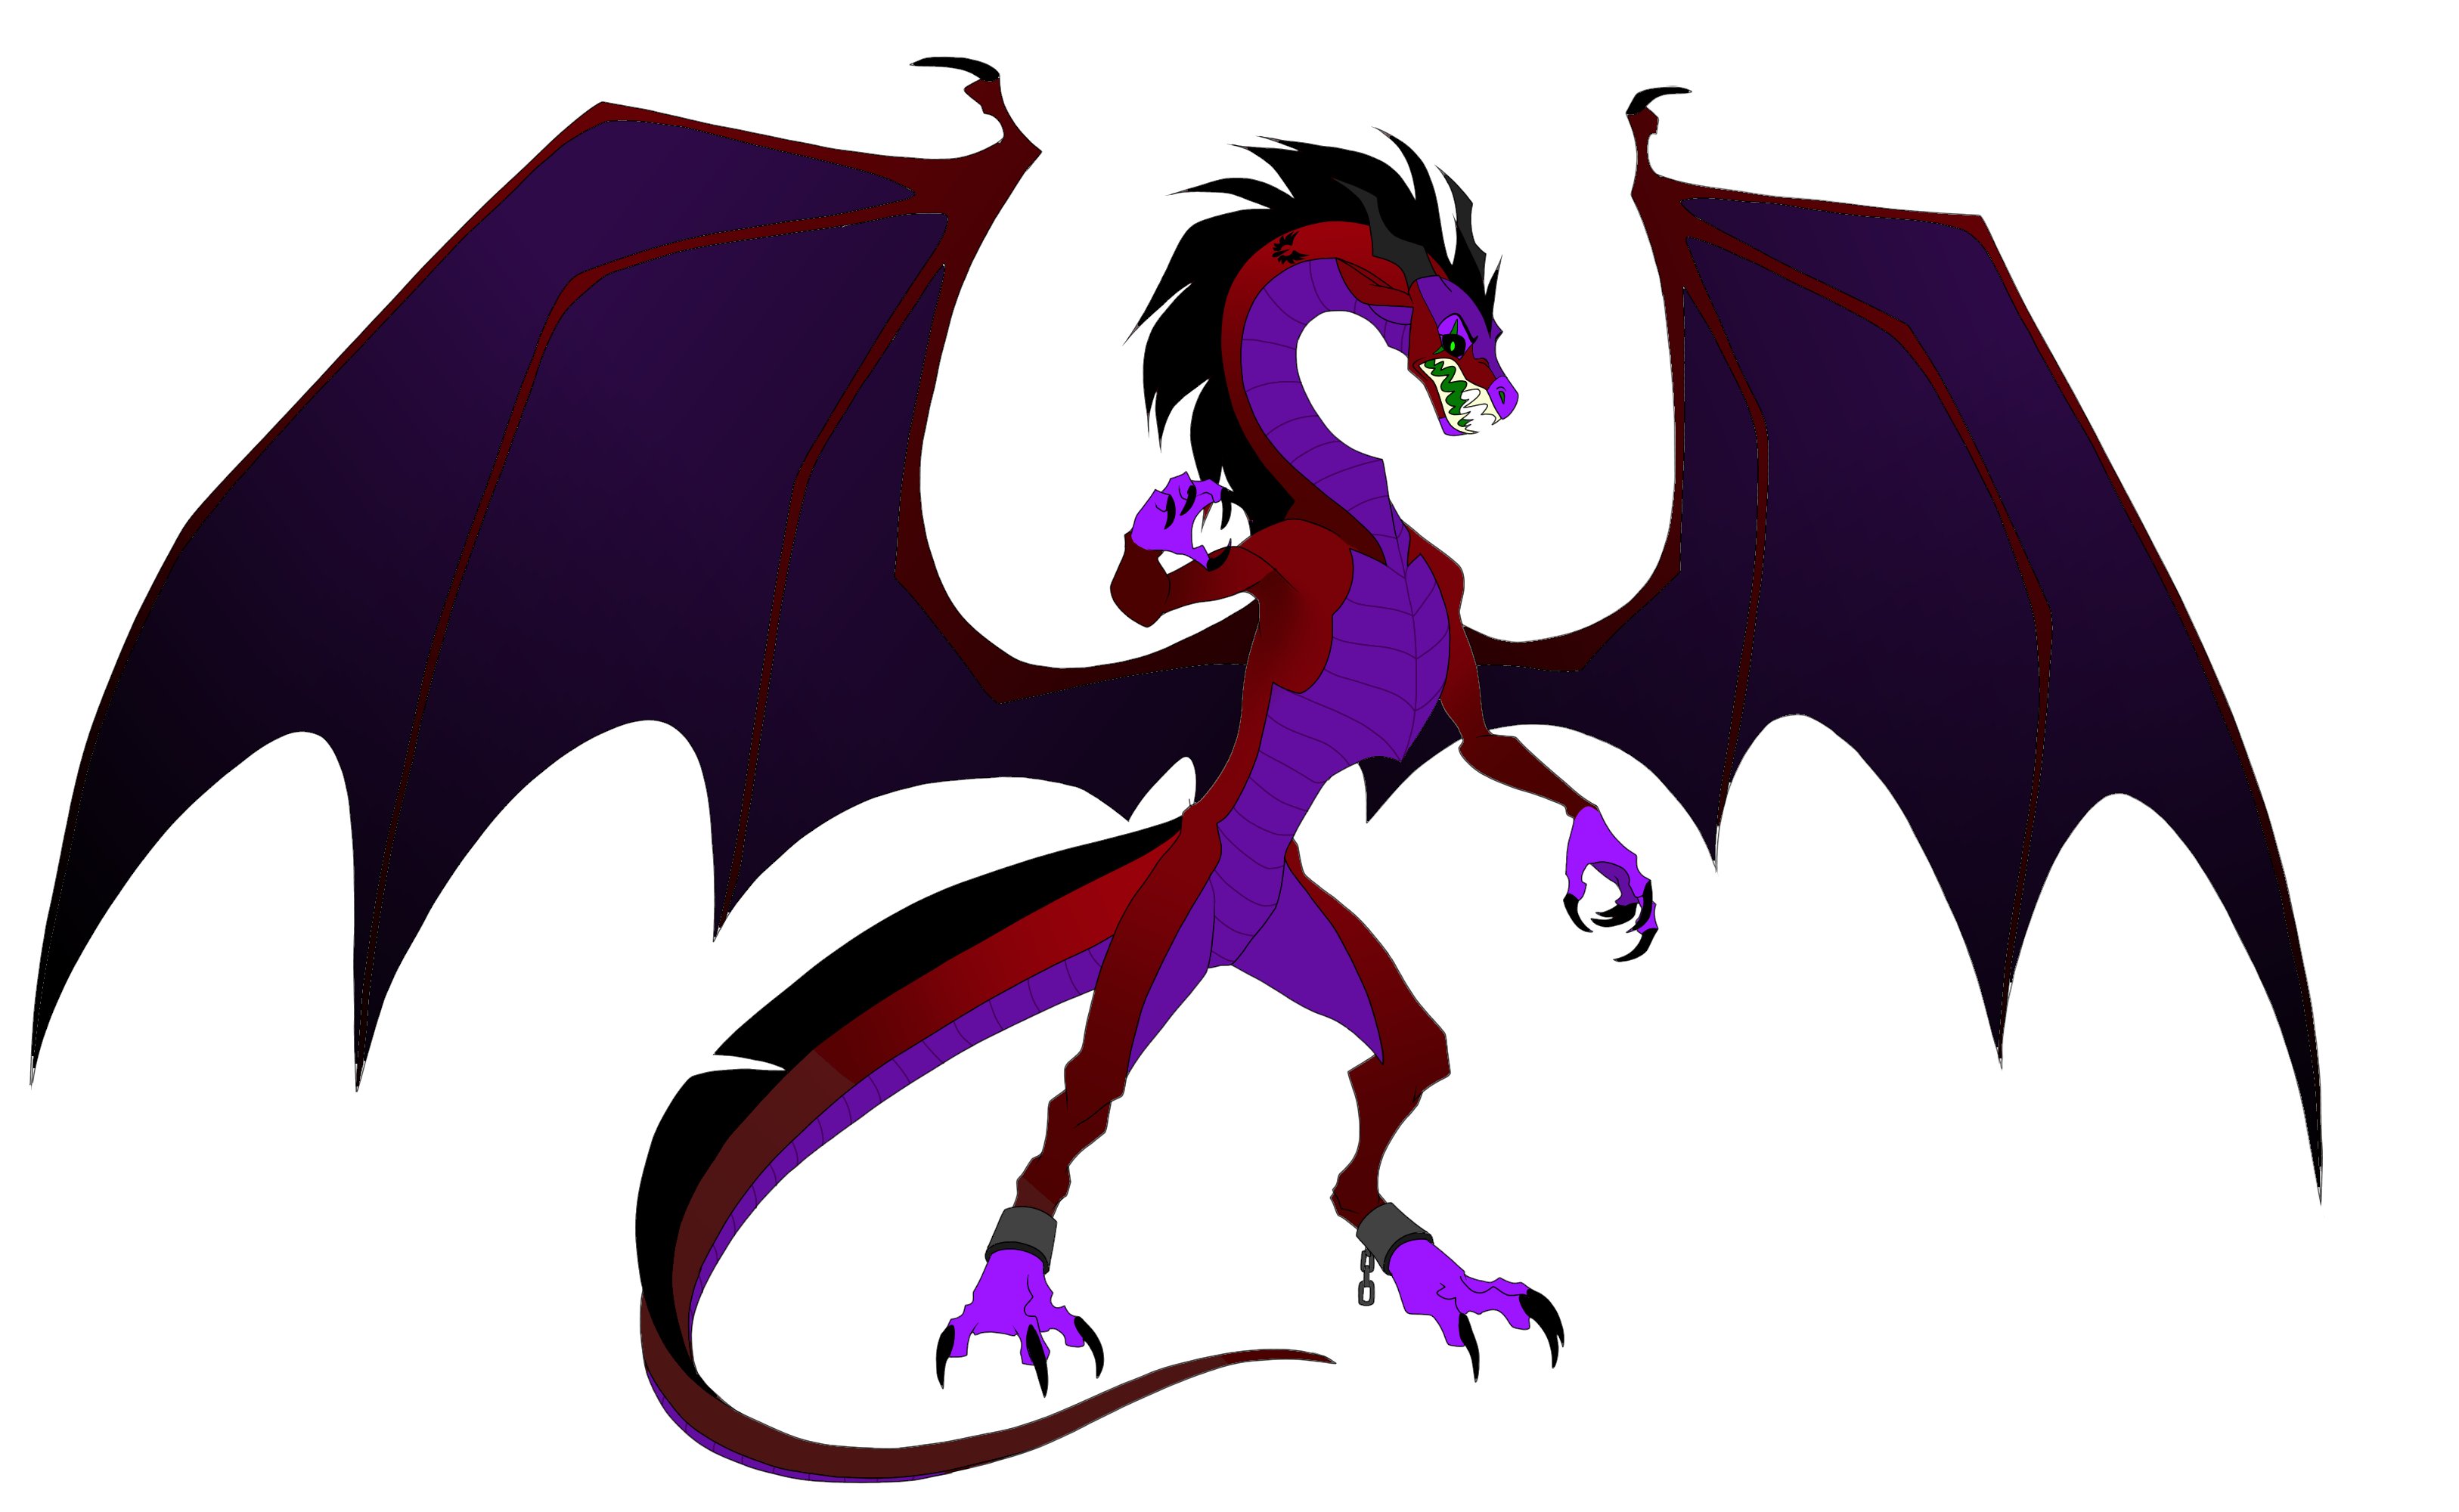 Dragons' Roar by wingwolf-WinGD on DeviantArt